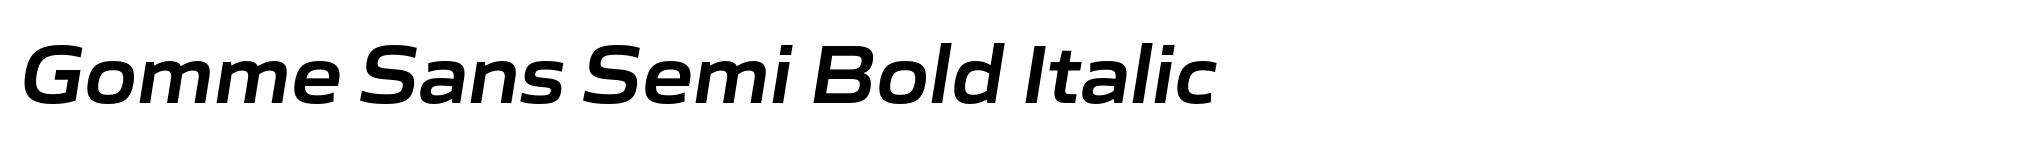 Gomme Sans Semi Bold Italic image